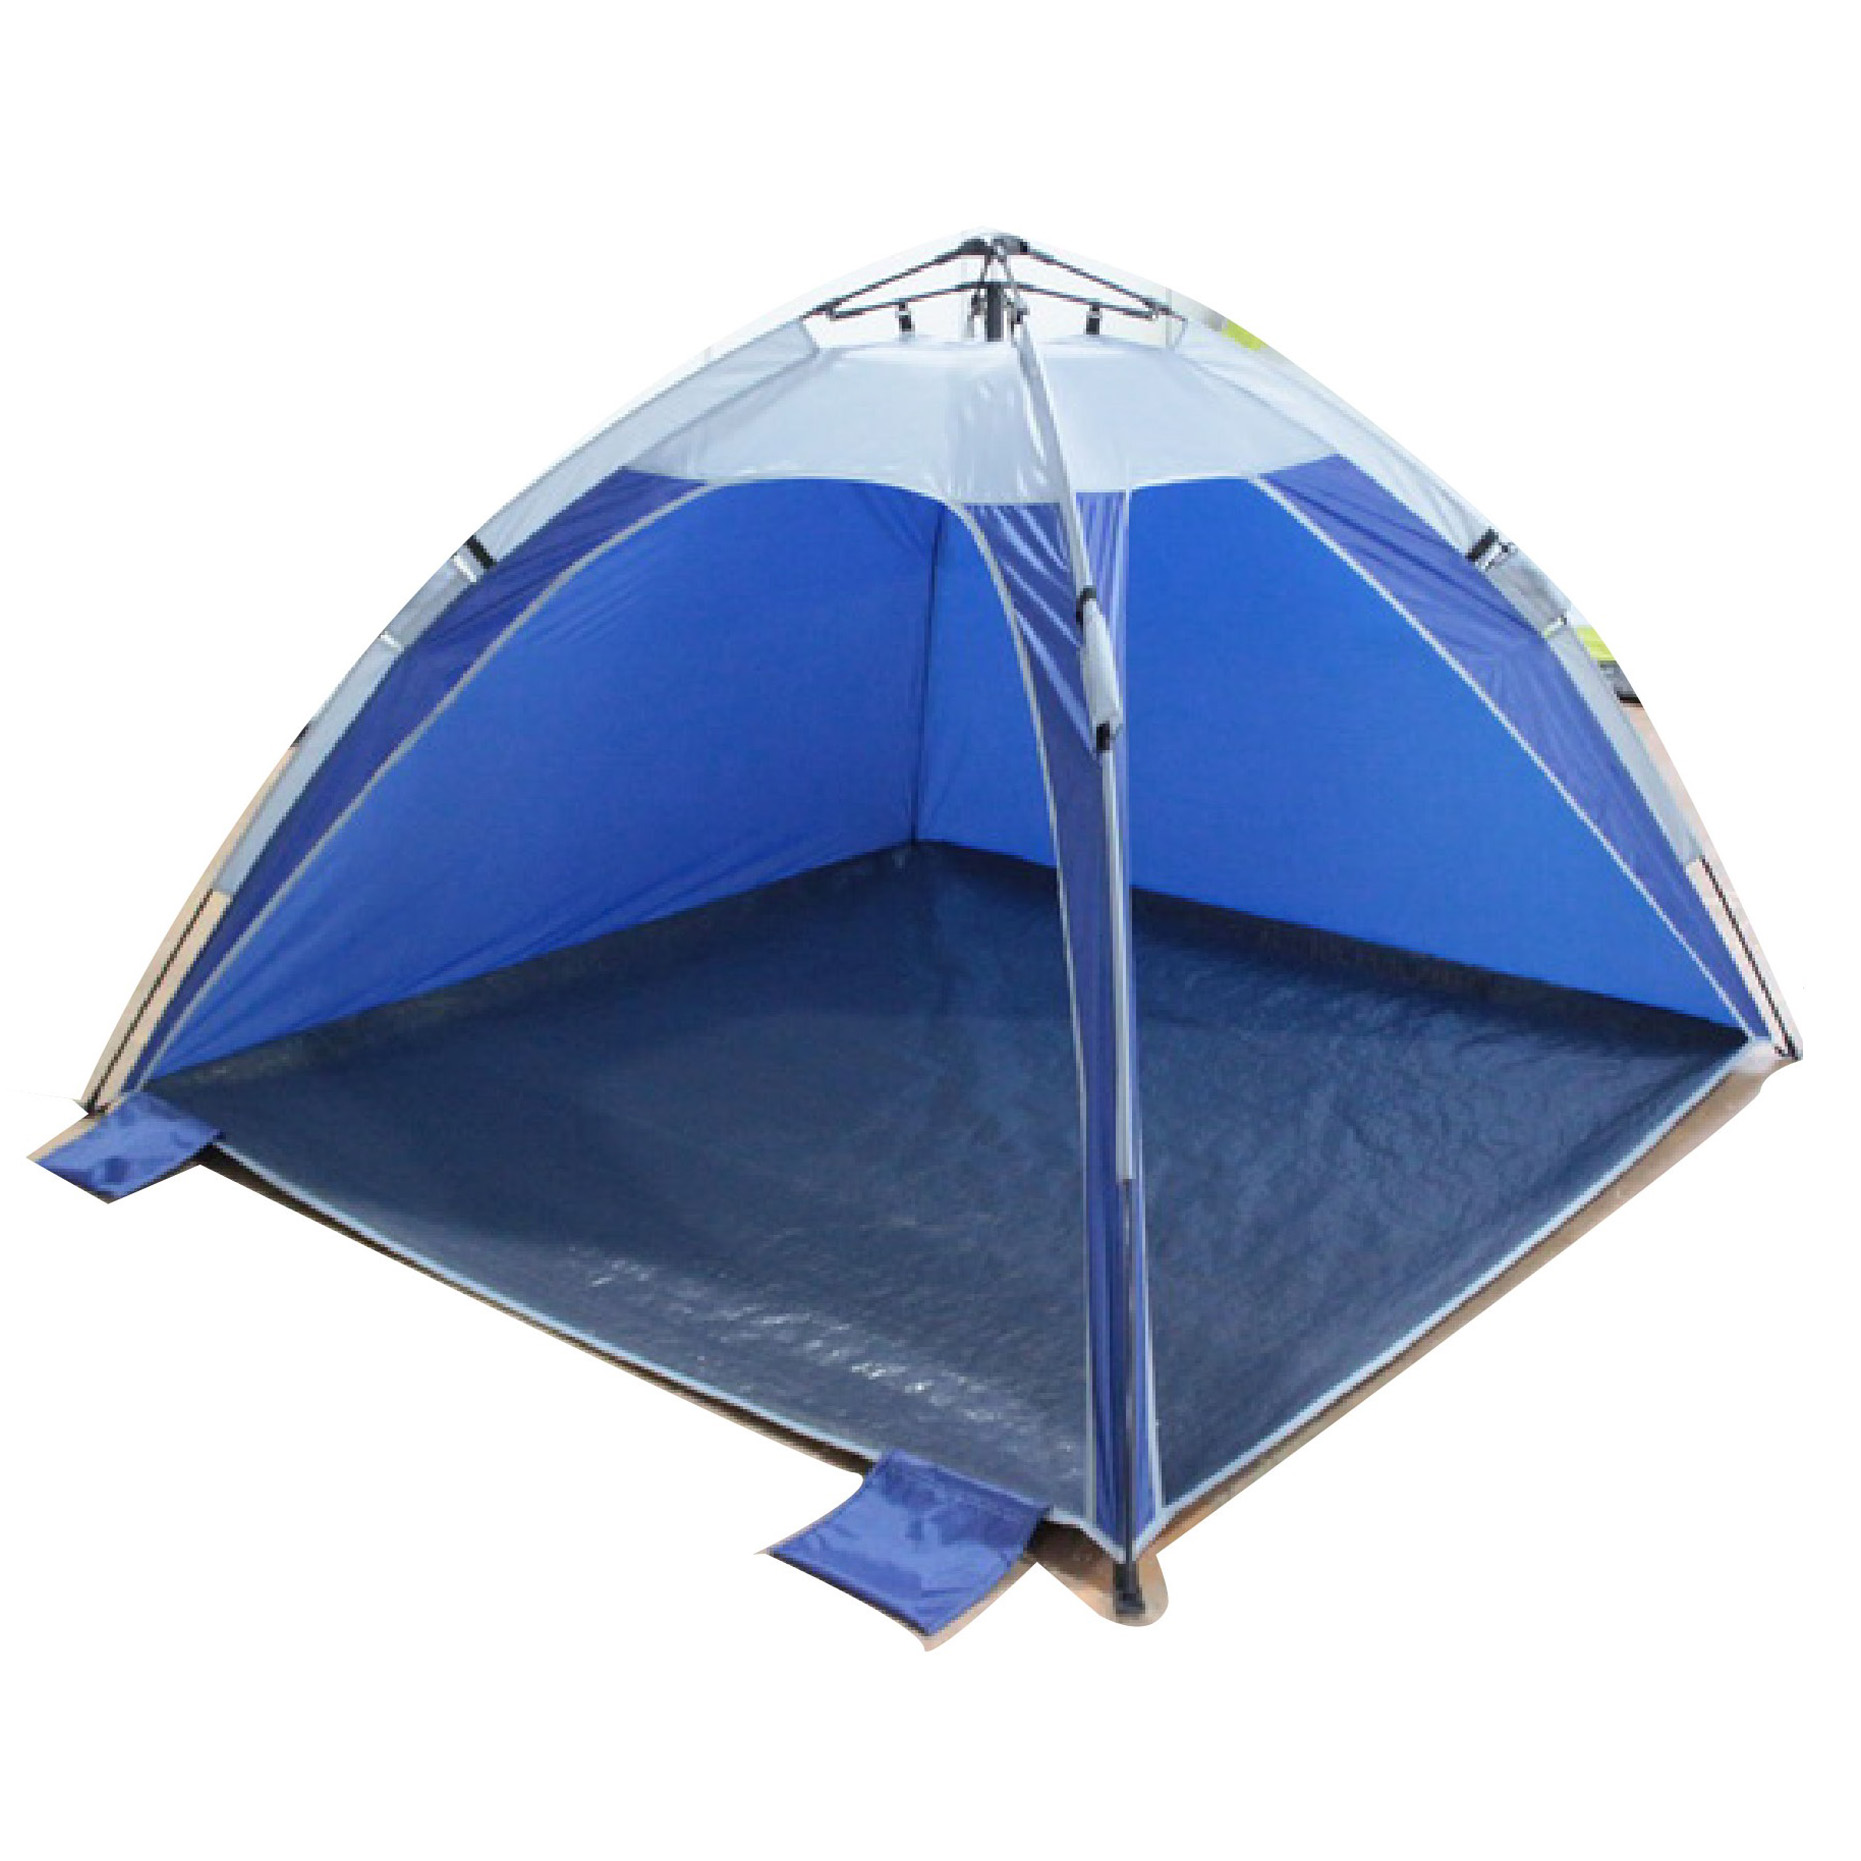 אוהל צל POP UP, פתיחה וסגירה מהירים תוך שניות ספורות הודות למנגנון פניאומטי חדשני.
